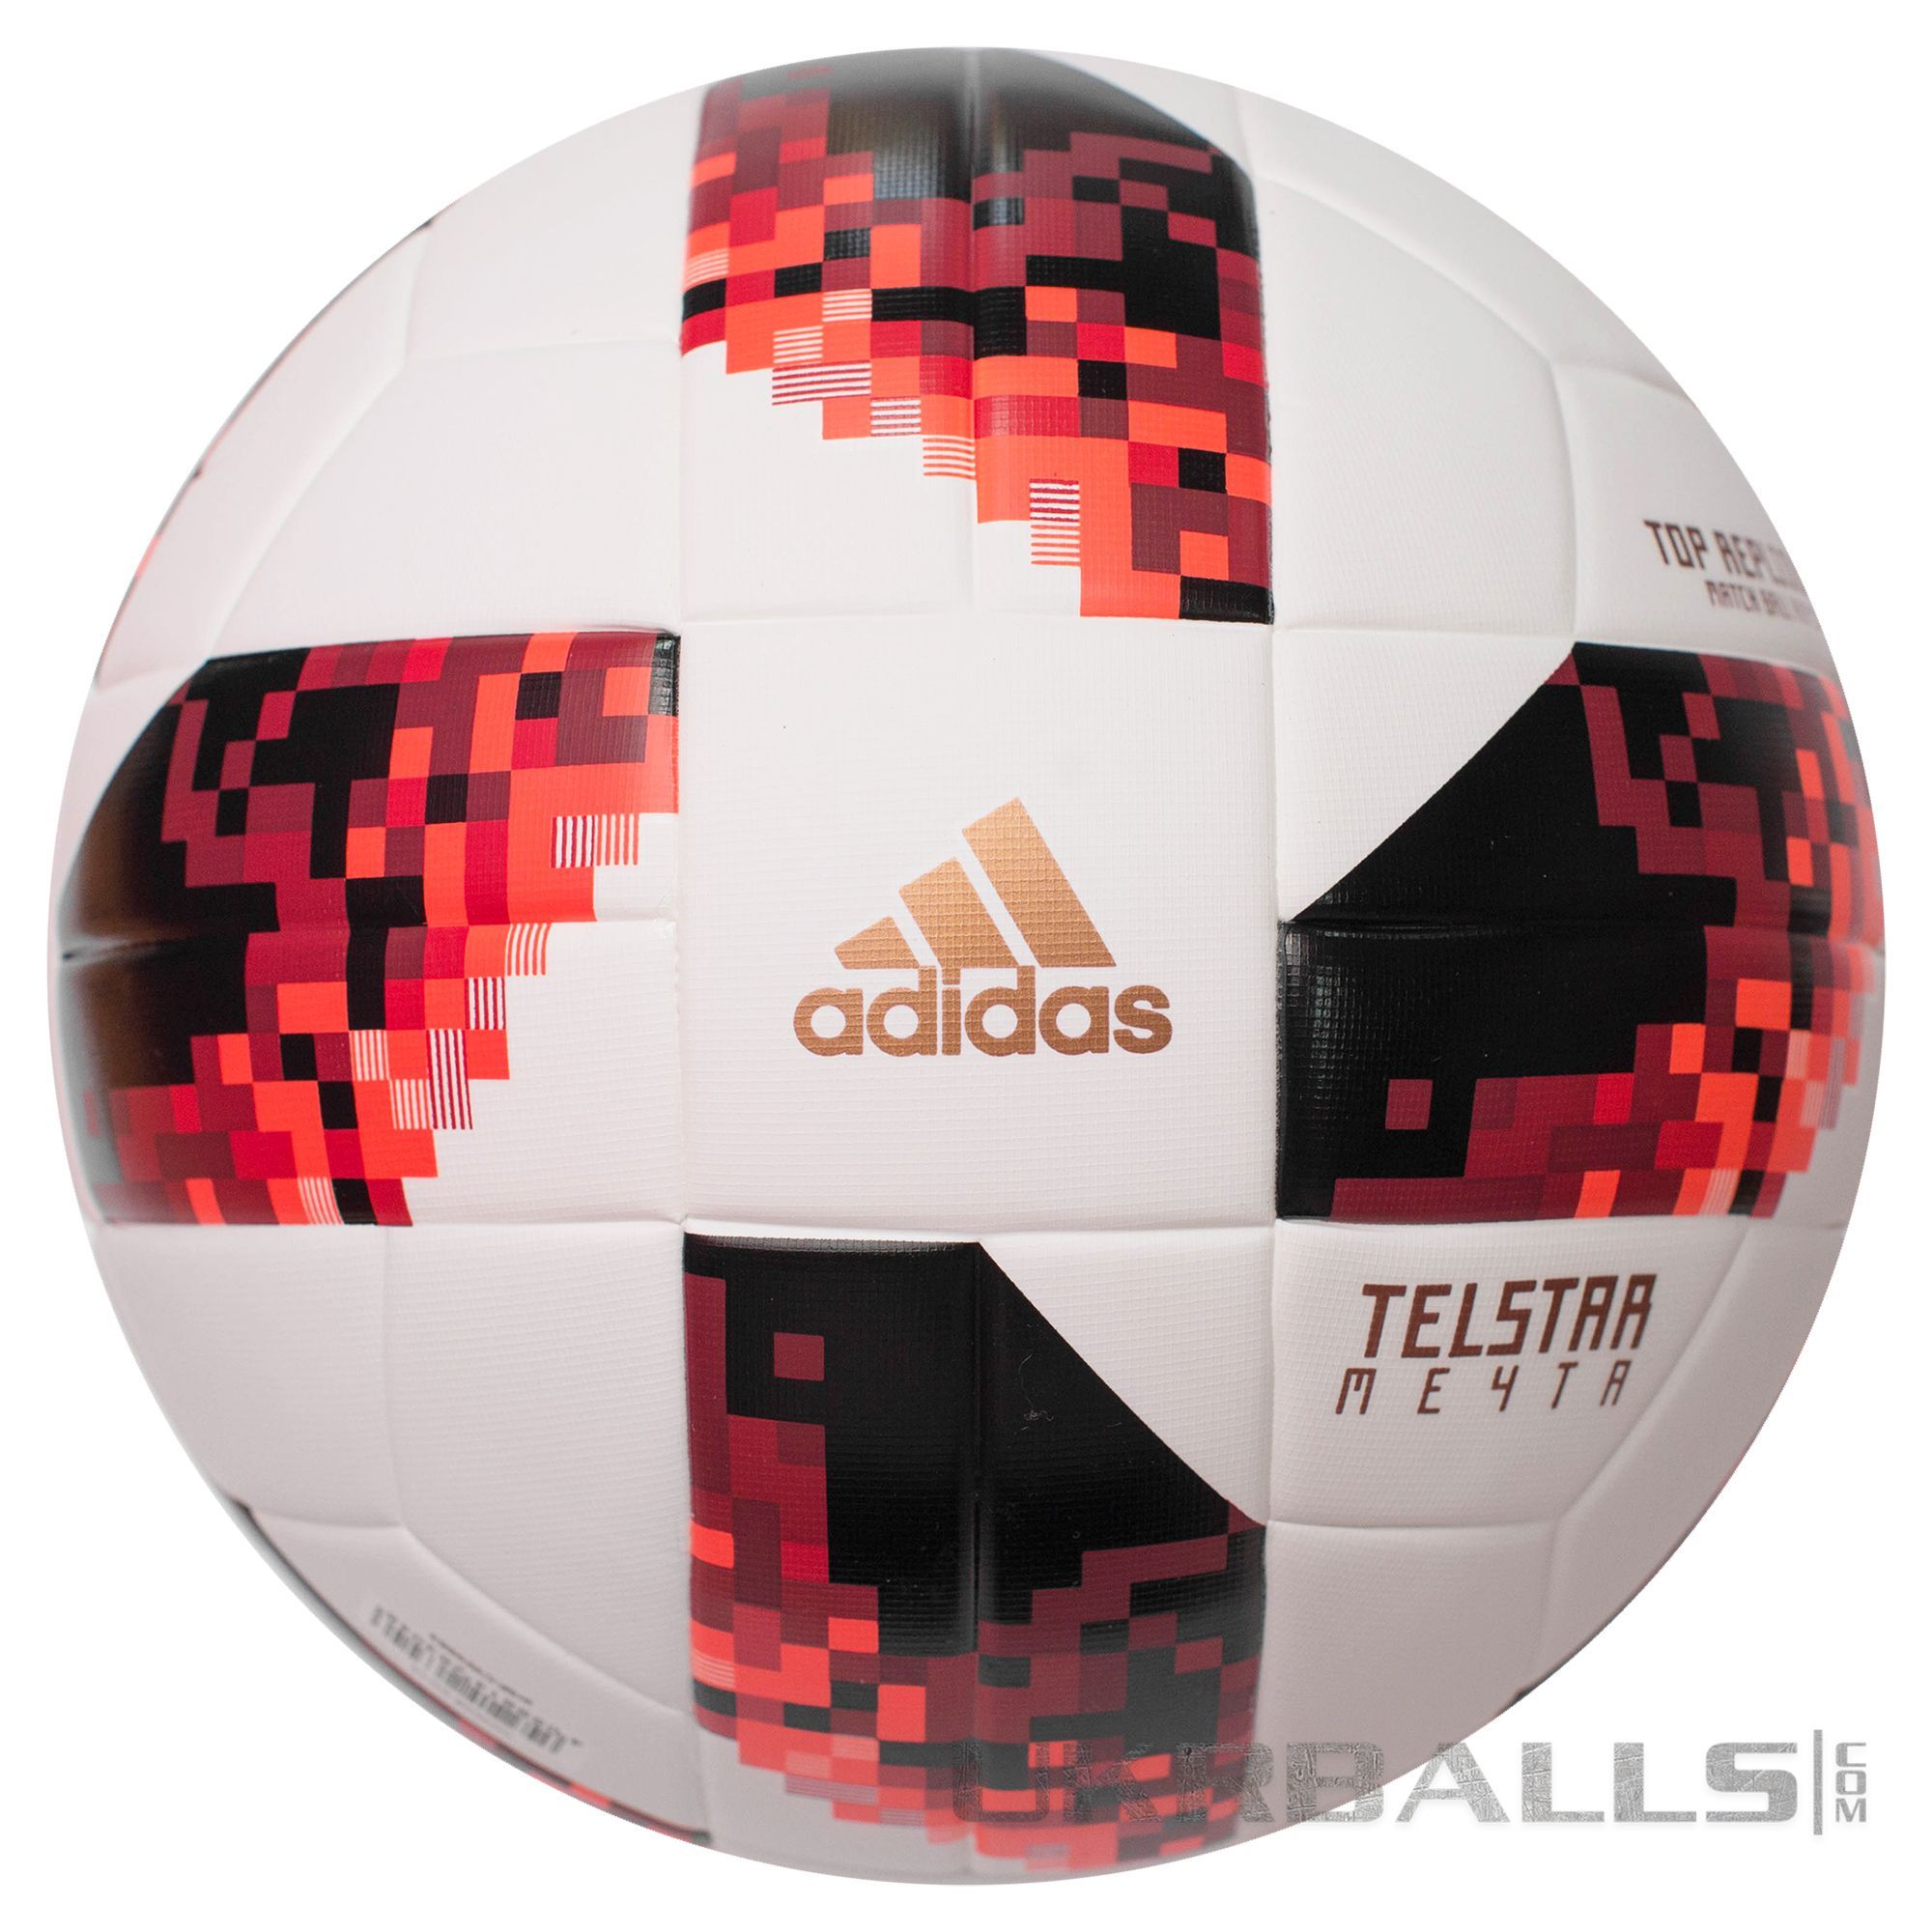 Adidas Telstar 18 